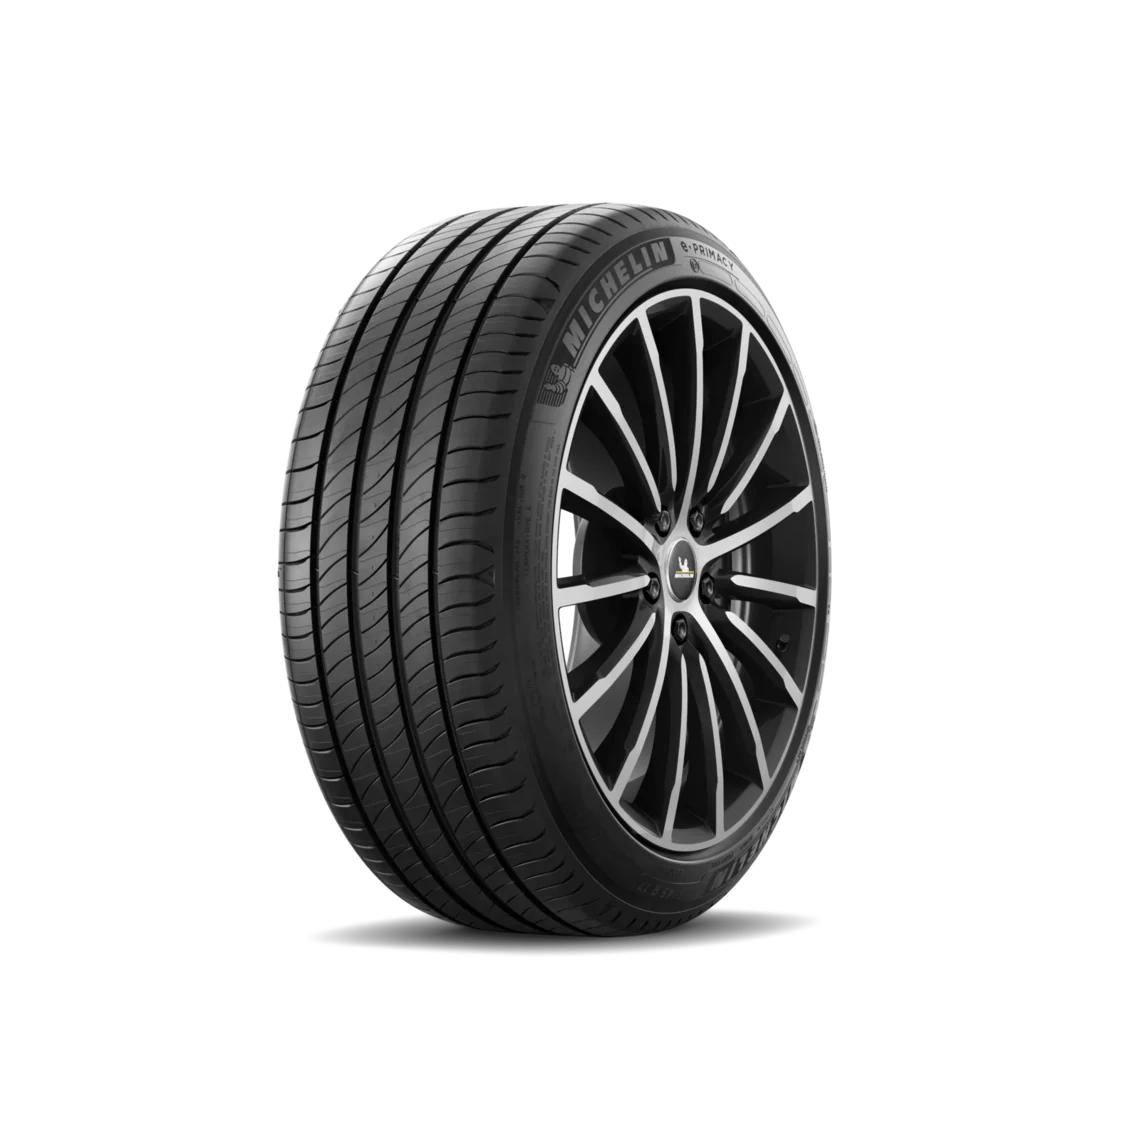 Michelin Michelin 195/55 R16 91H E.Primacy Demo S1 XL pneumatici nuovi Estivo 